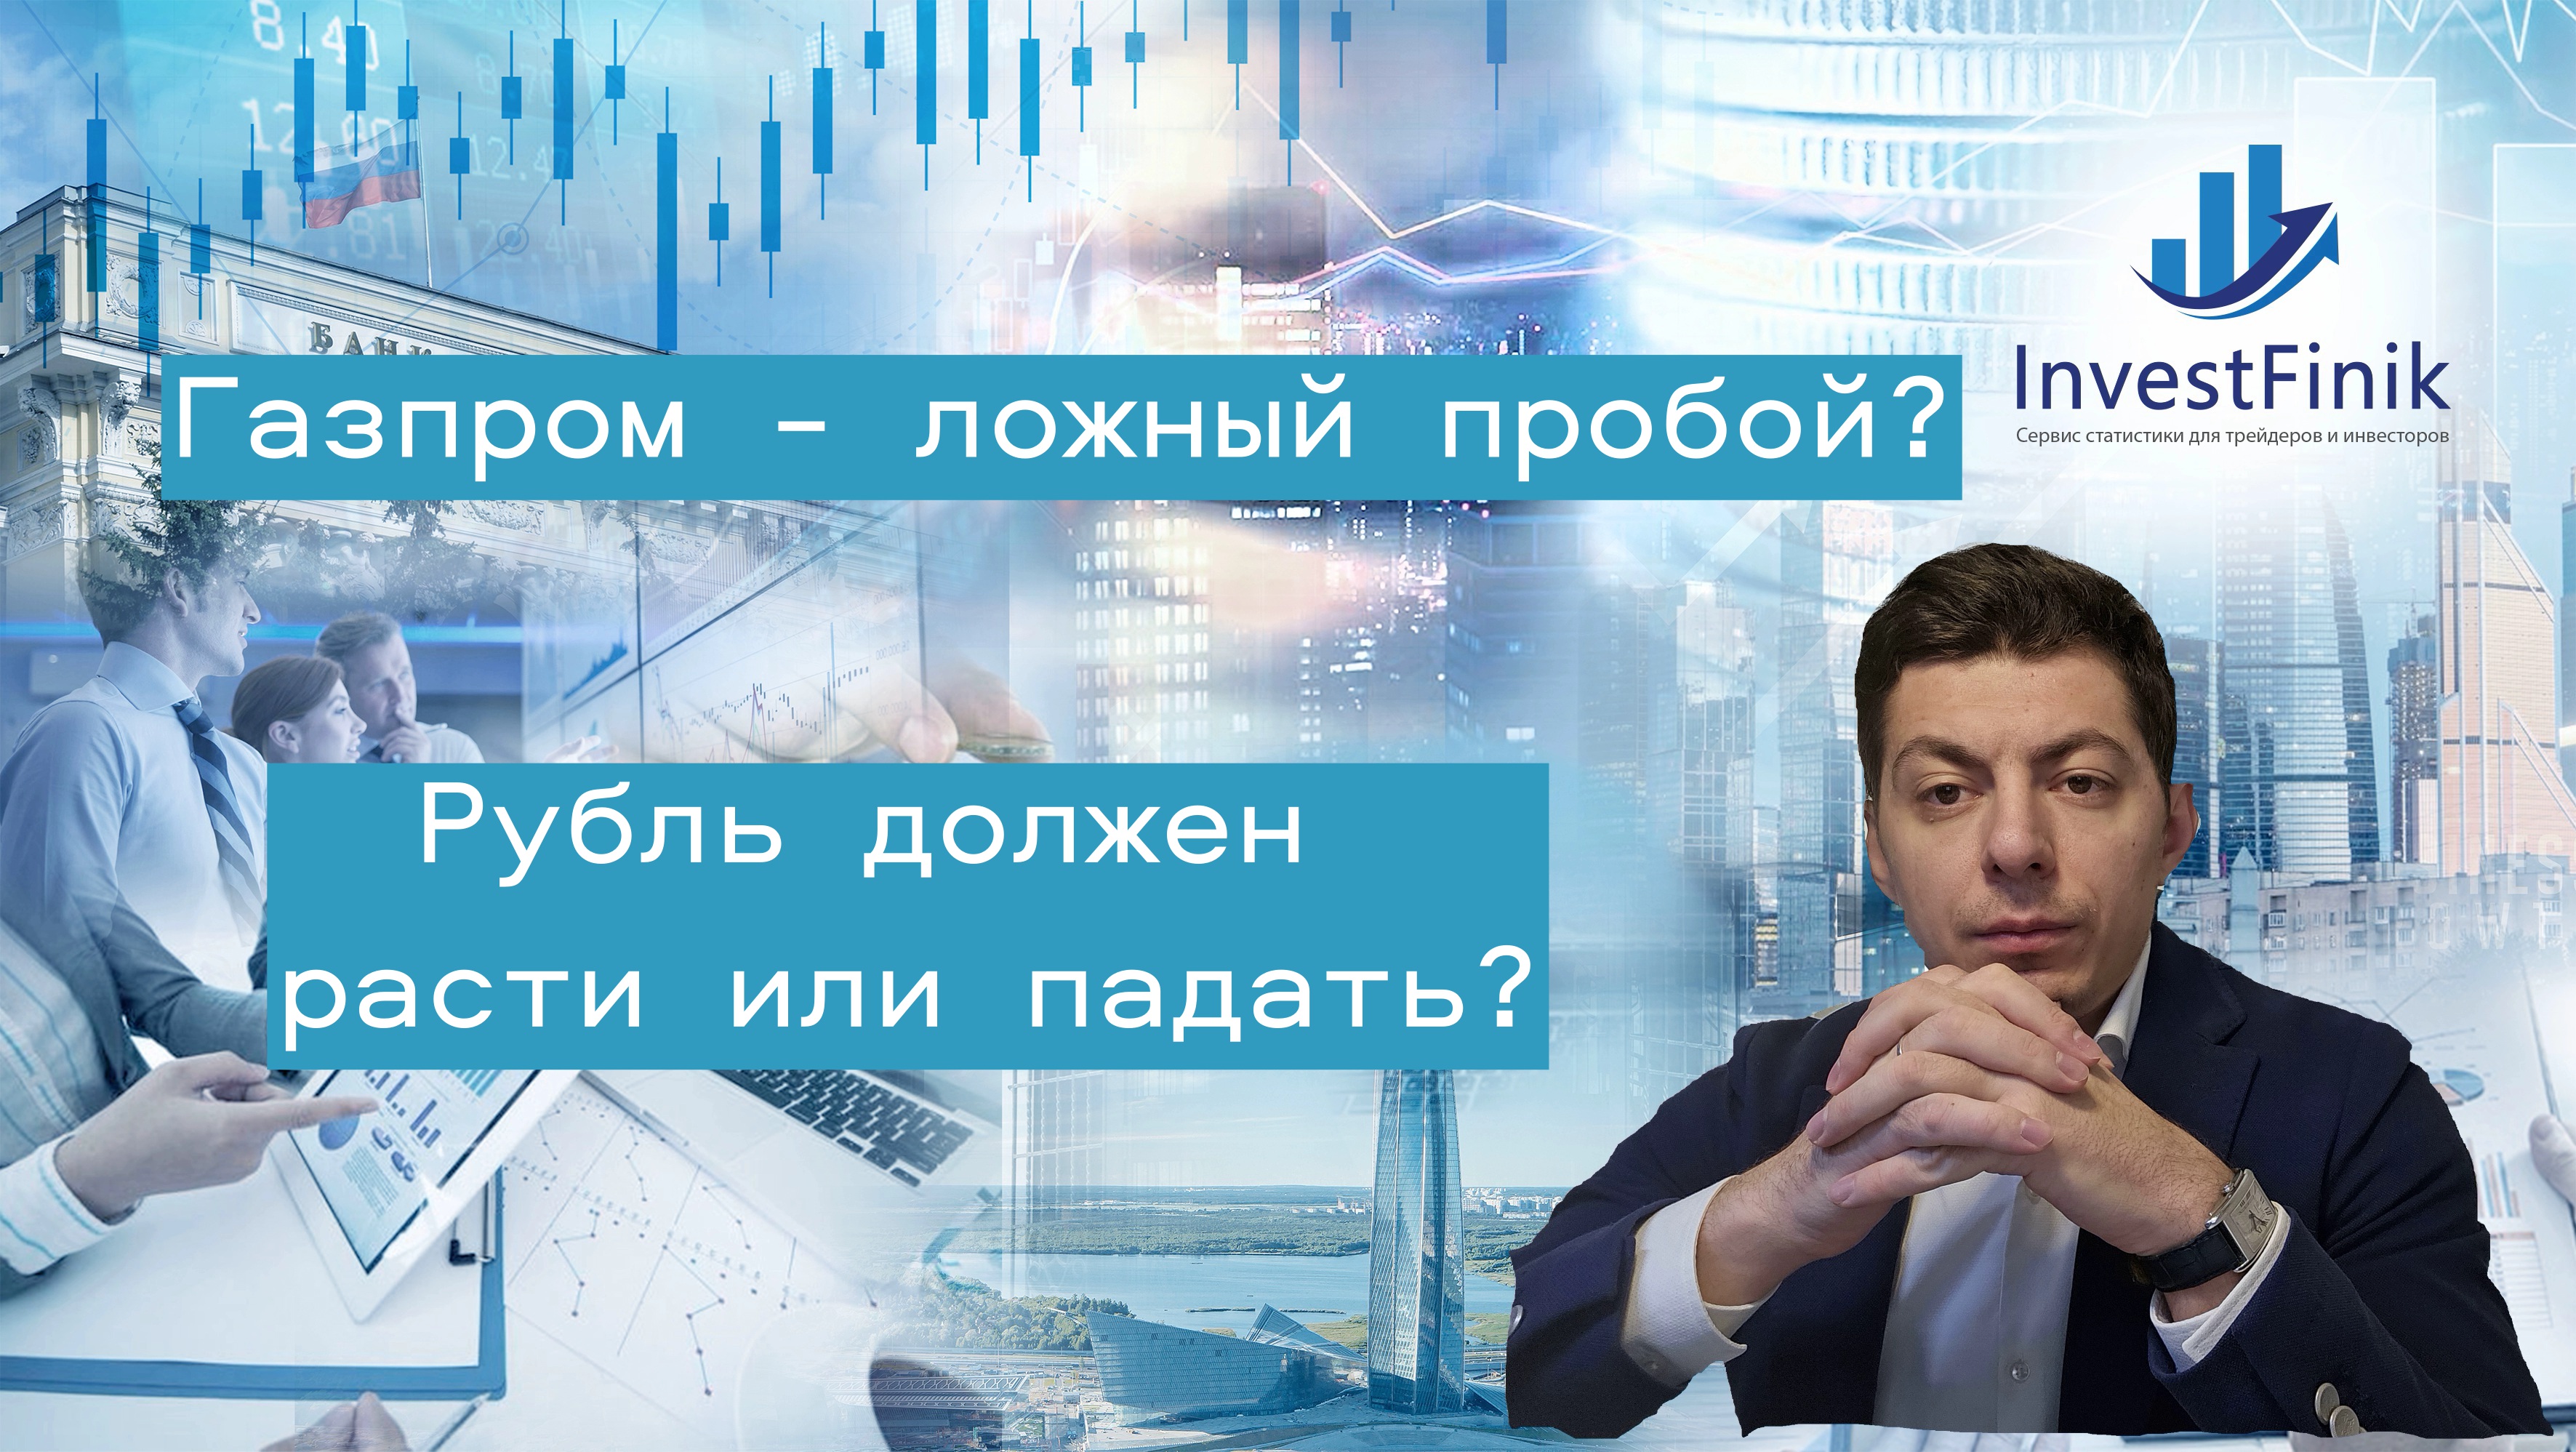 Нас обманули в Газпроме? Рубль должен все-таки падать или расти? Что по Яндексу и нефти?